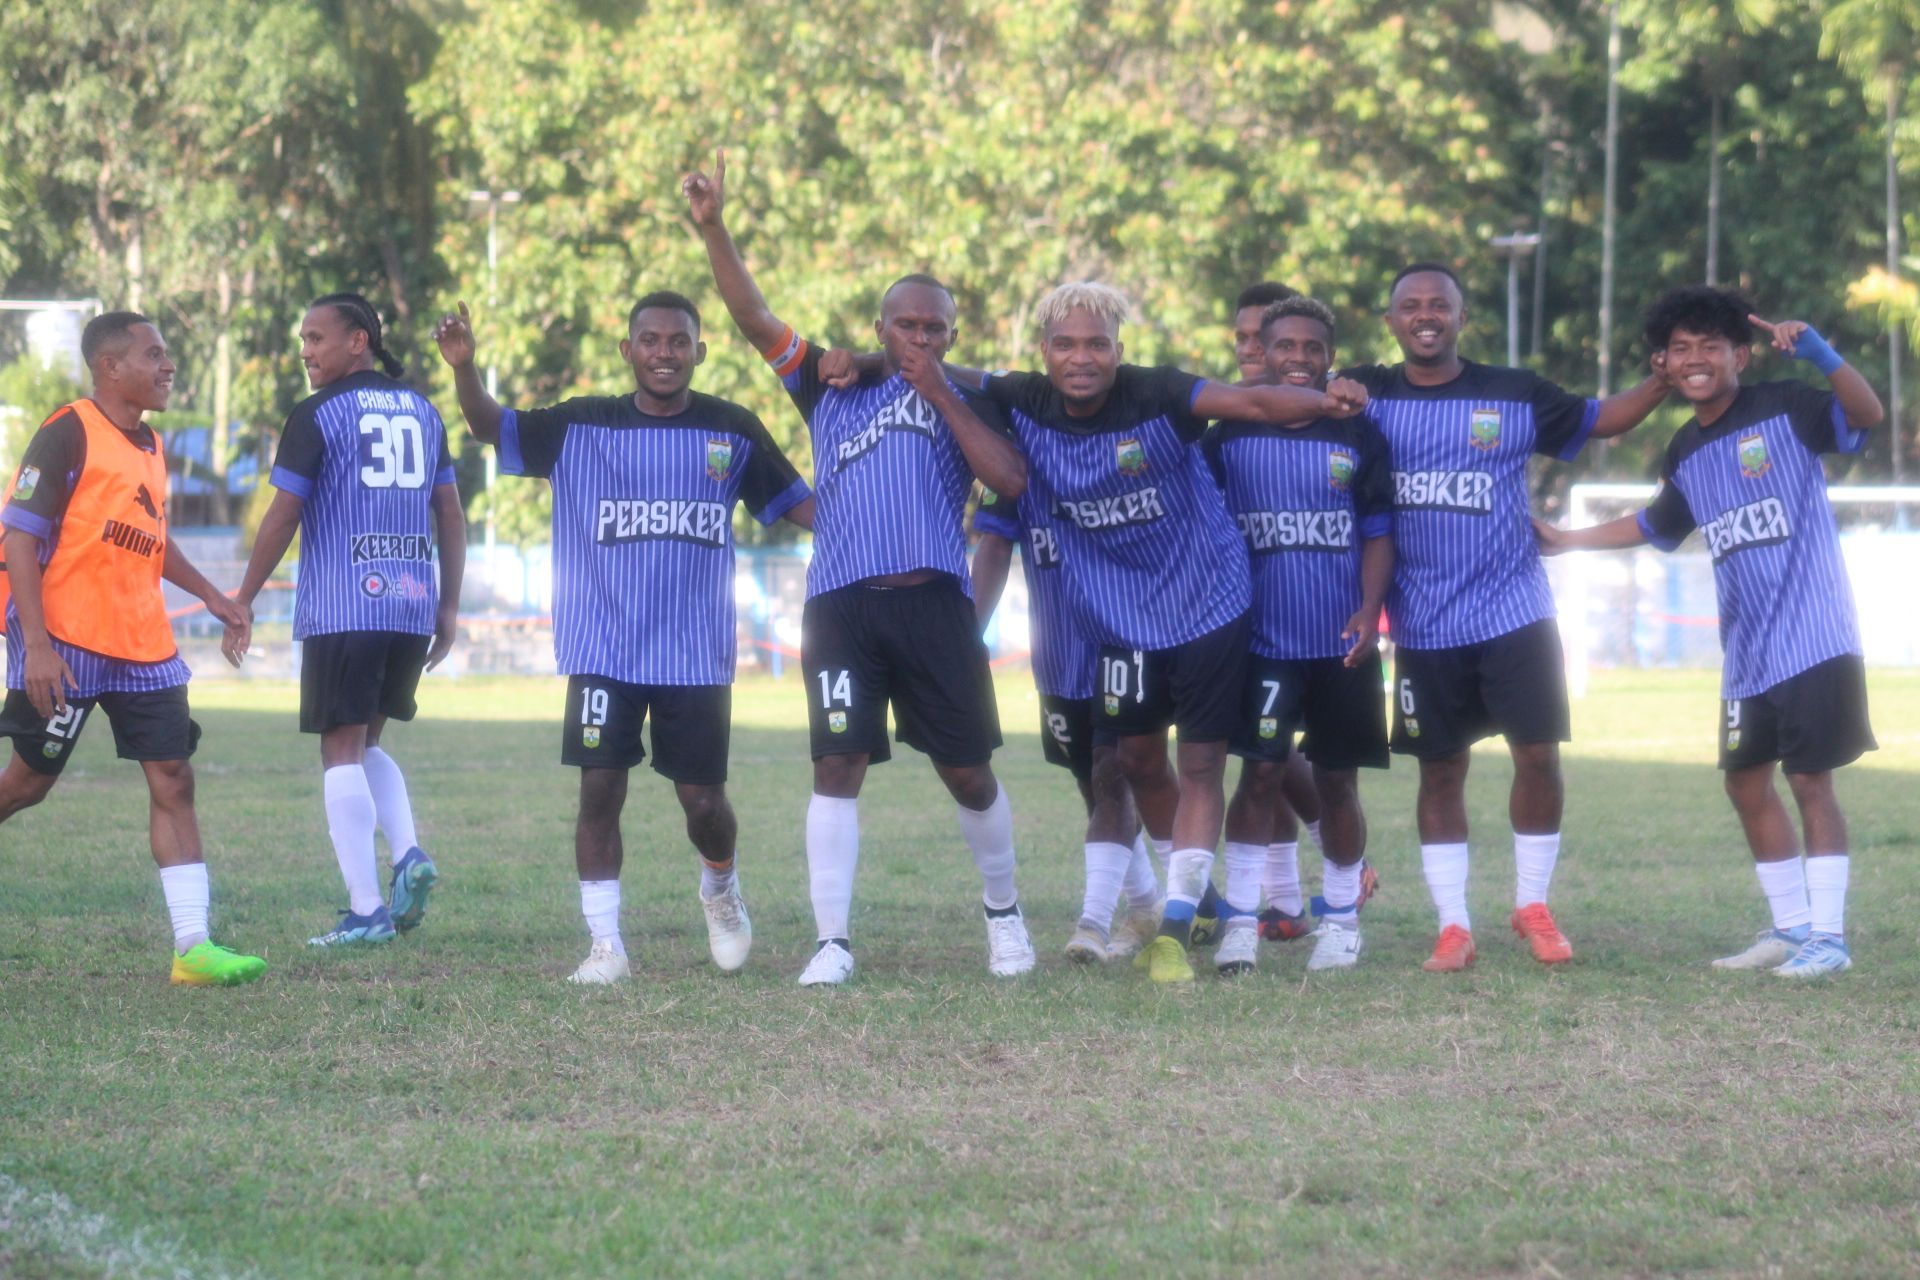 Pemain Persiker Keerom rayakan keunggulan mereka 1-0 ketika Albert membobol gawang tim Waanal (Portal Papua) Silas Ramandey